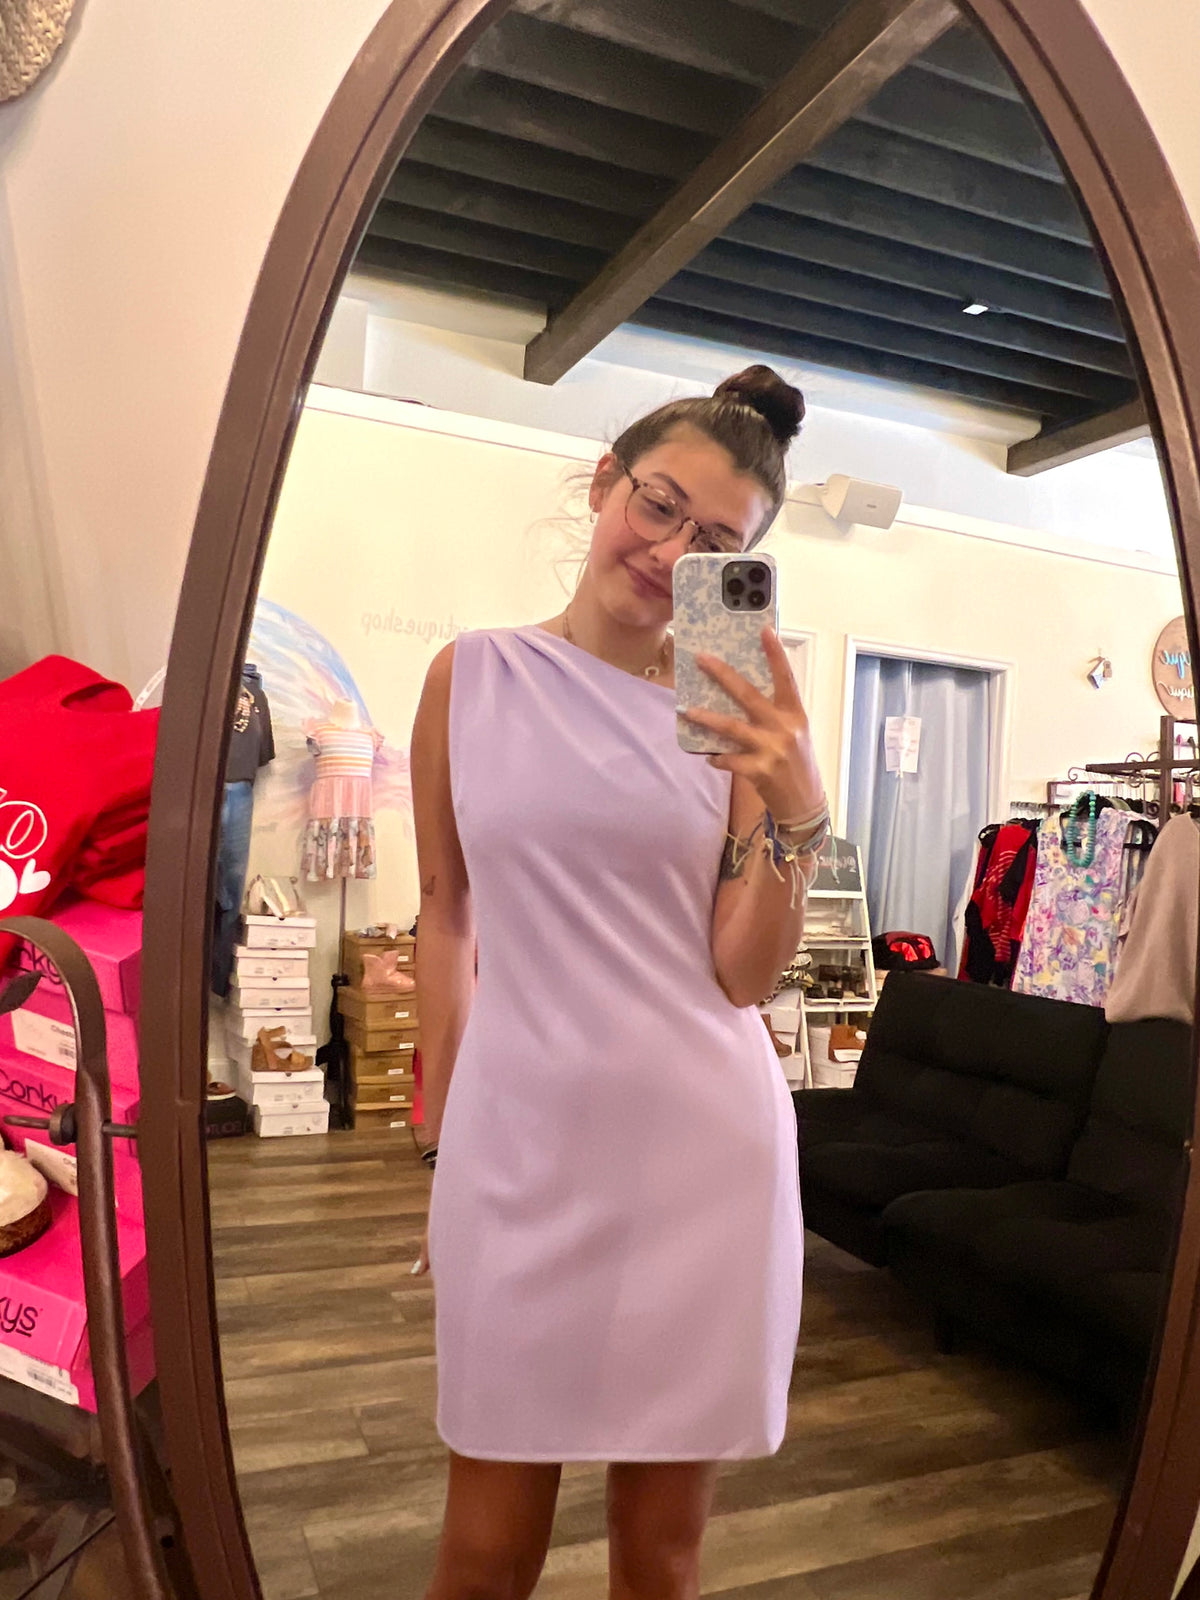 Lilac Dress